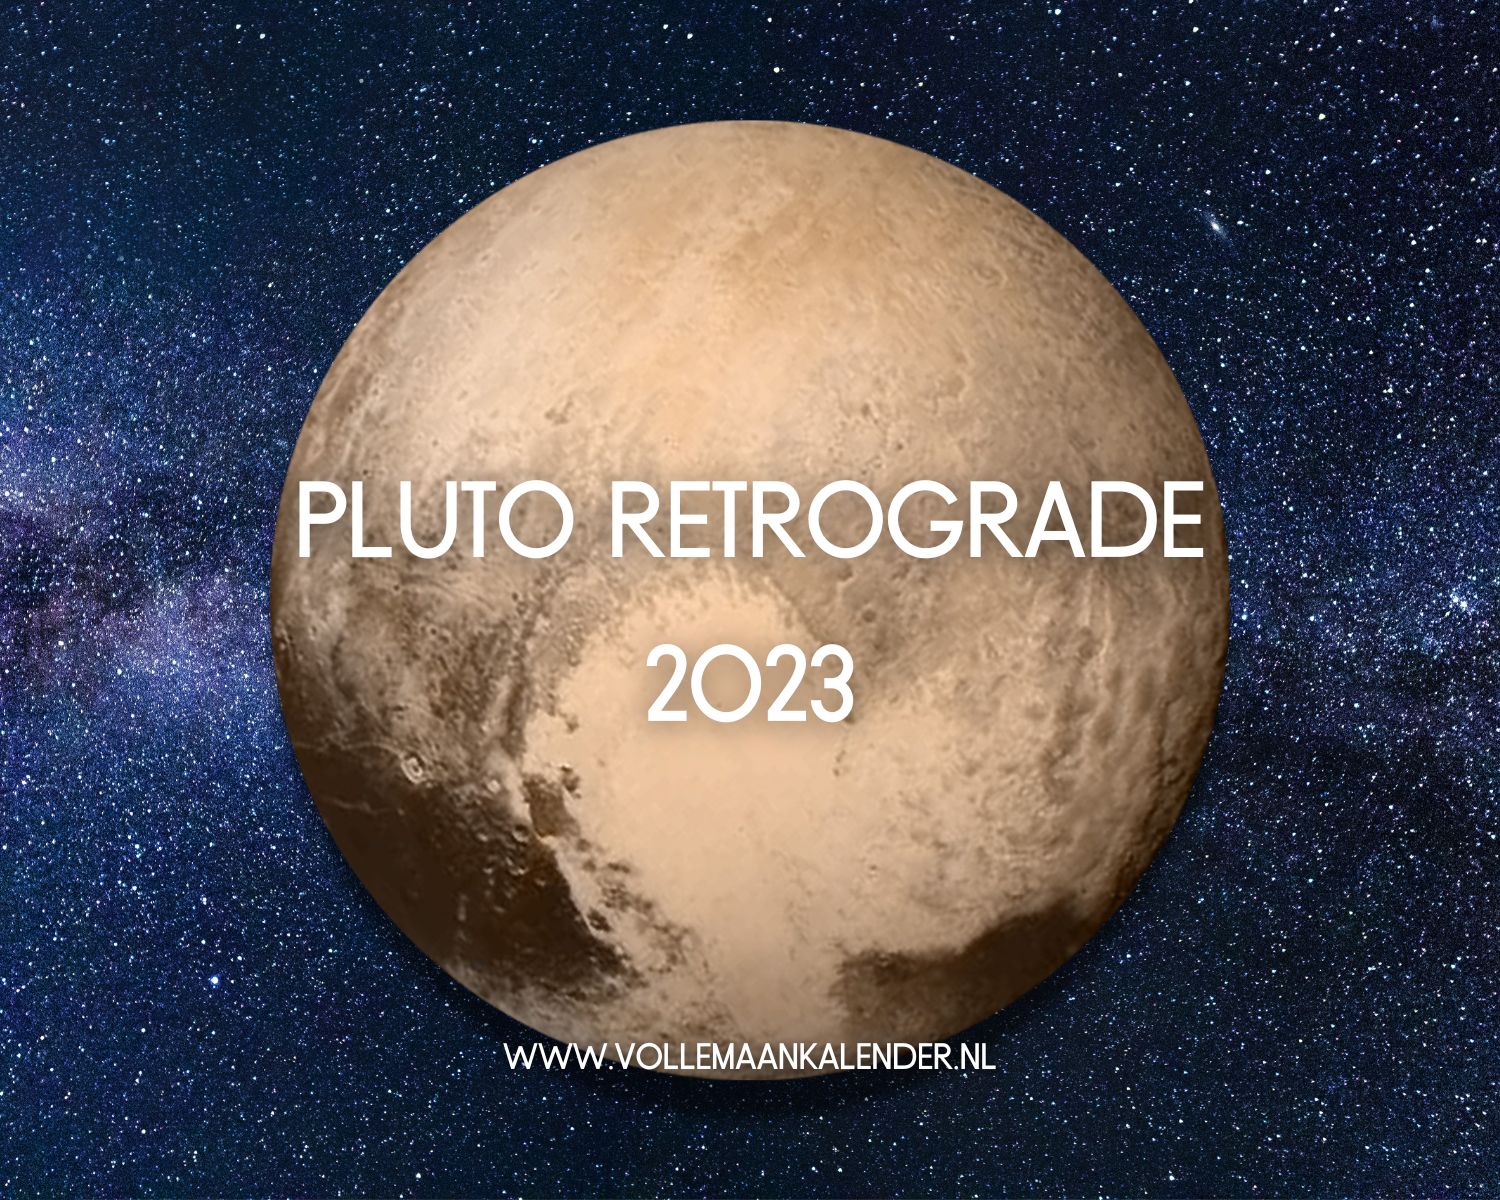 Pluto retrograde 2023 dit móet je weten VolleMaanKalender.nl